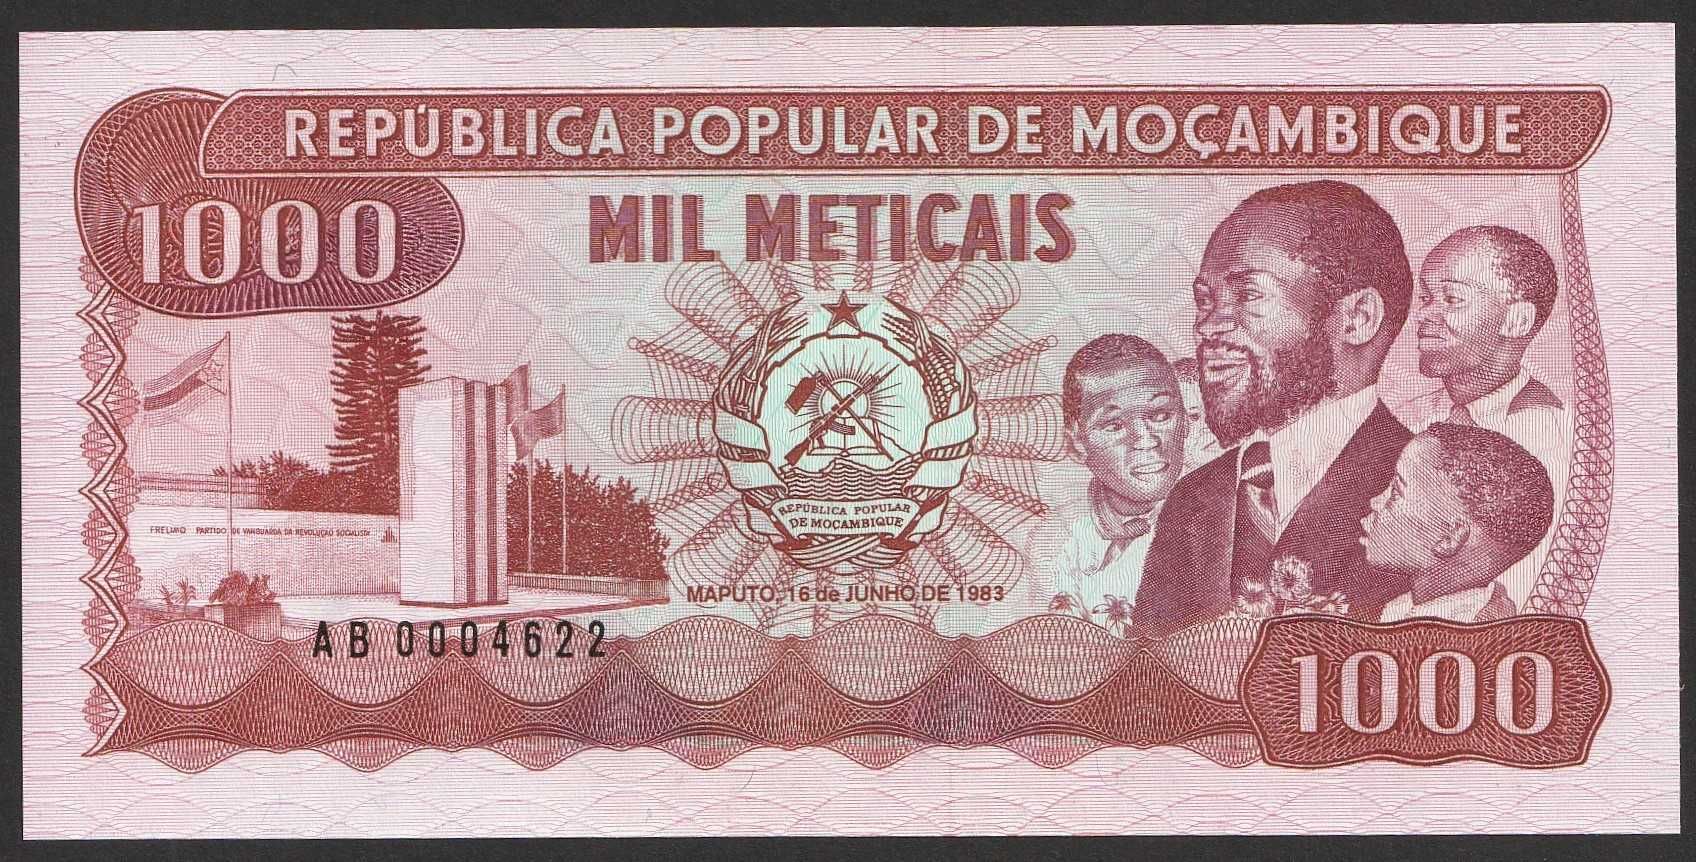 Mozambik 1000 meticais 1983 - AB000 - stan bankowy UNC